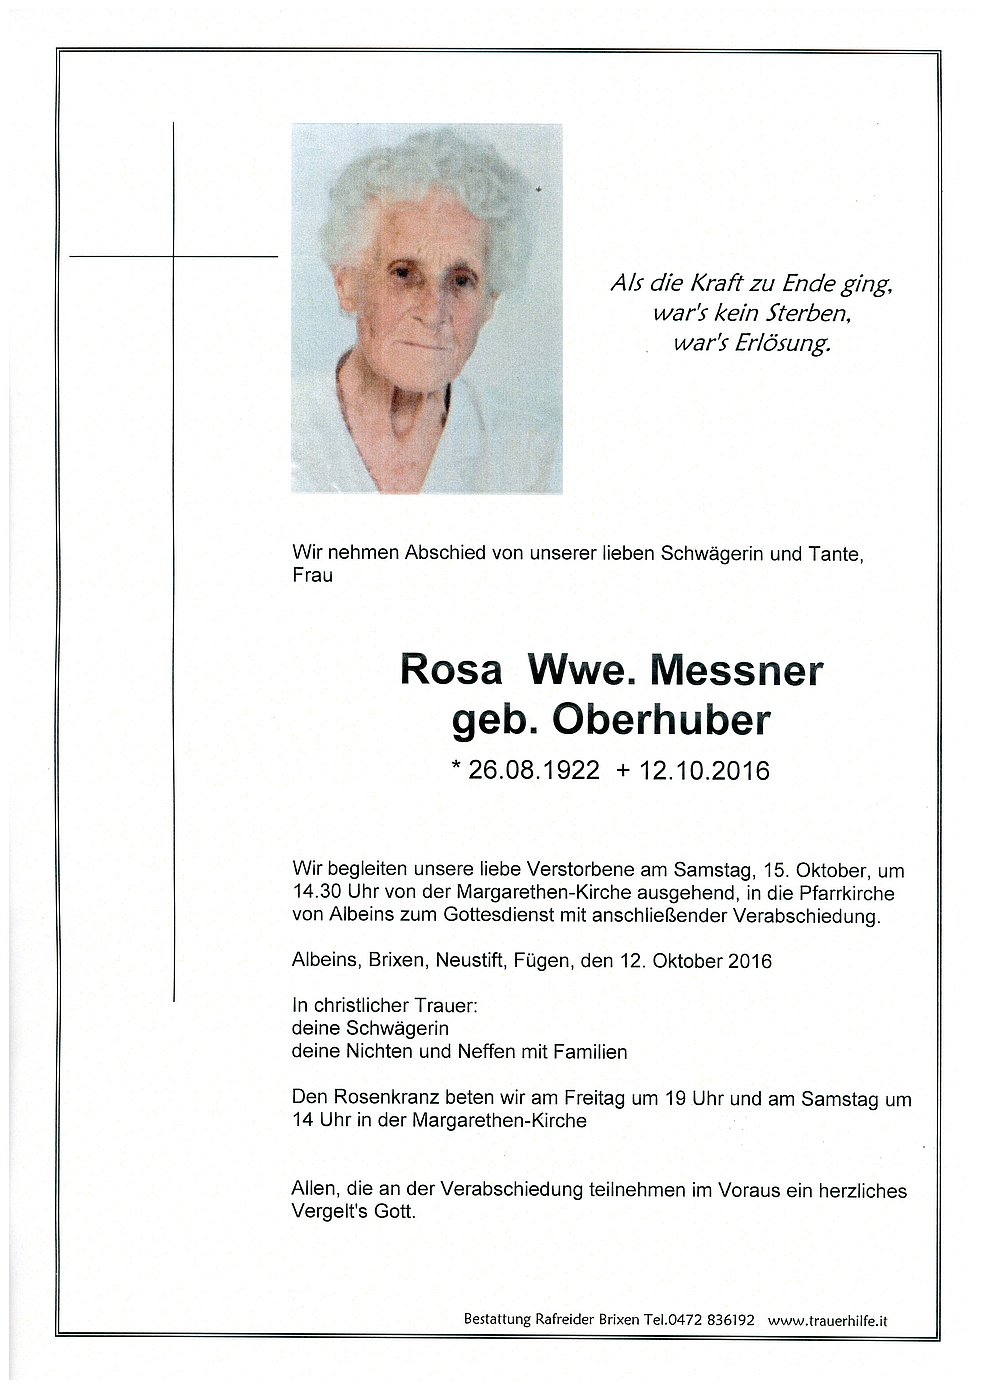 Rosa Wwe Messner Aus Brixen Trauerhilfeit Das Südtiroler Gedenkportal 